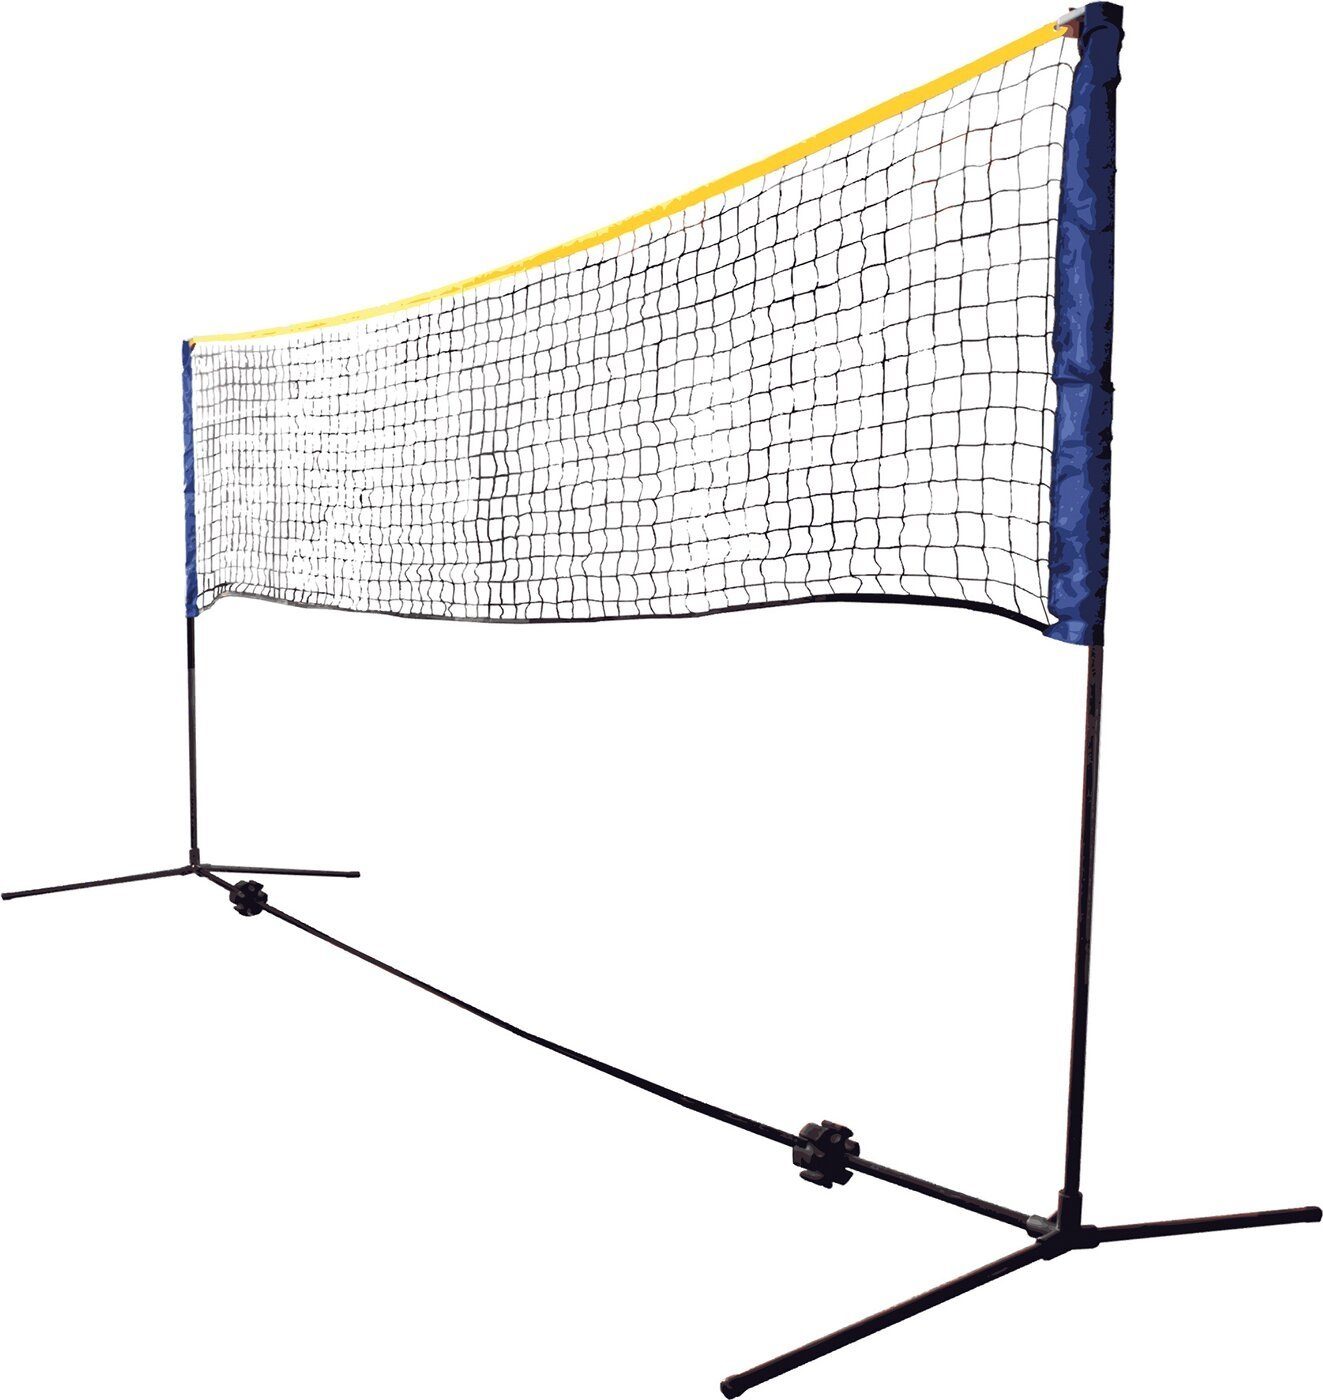 Talbot-Torro Badmintonnetz FUNSPORT Combi Set in Tragetasc Net